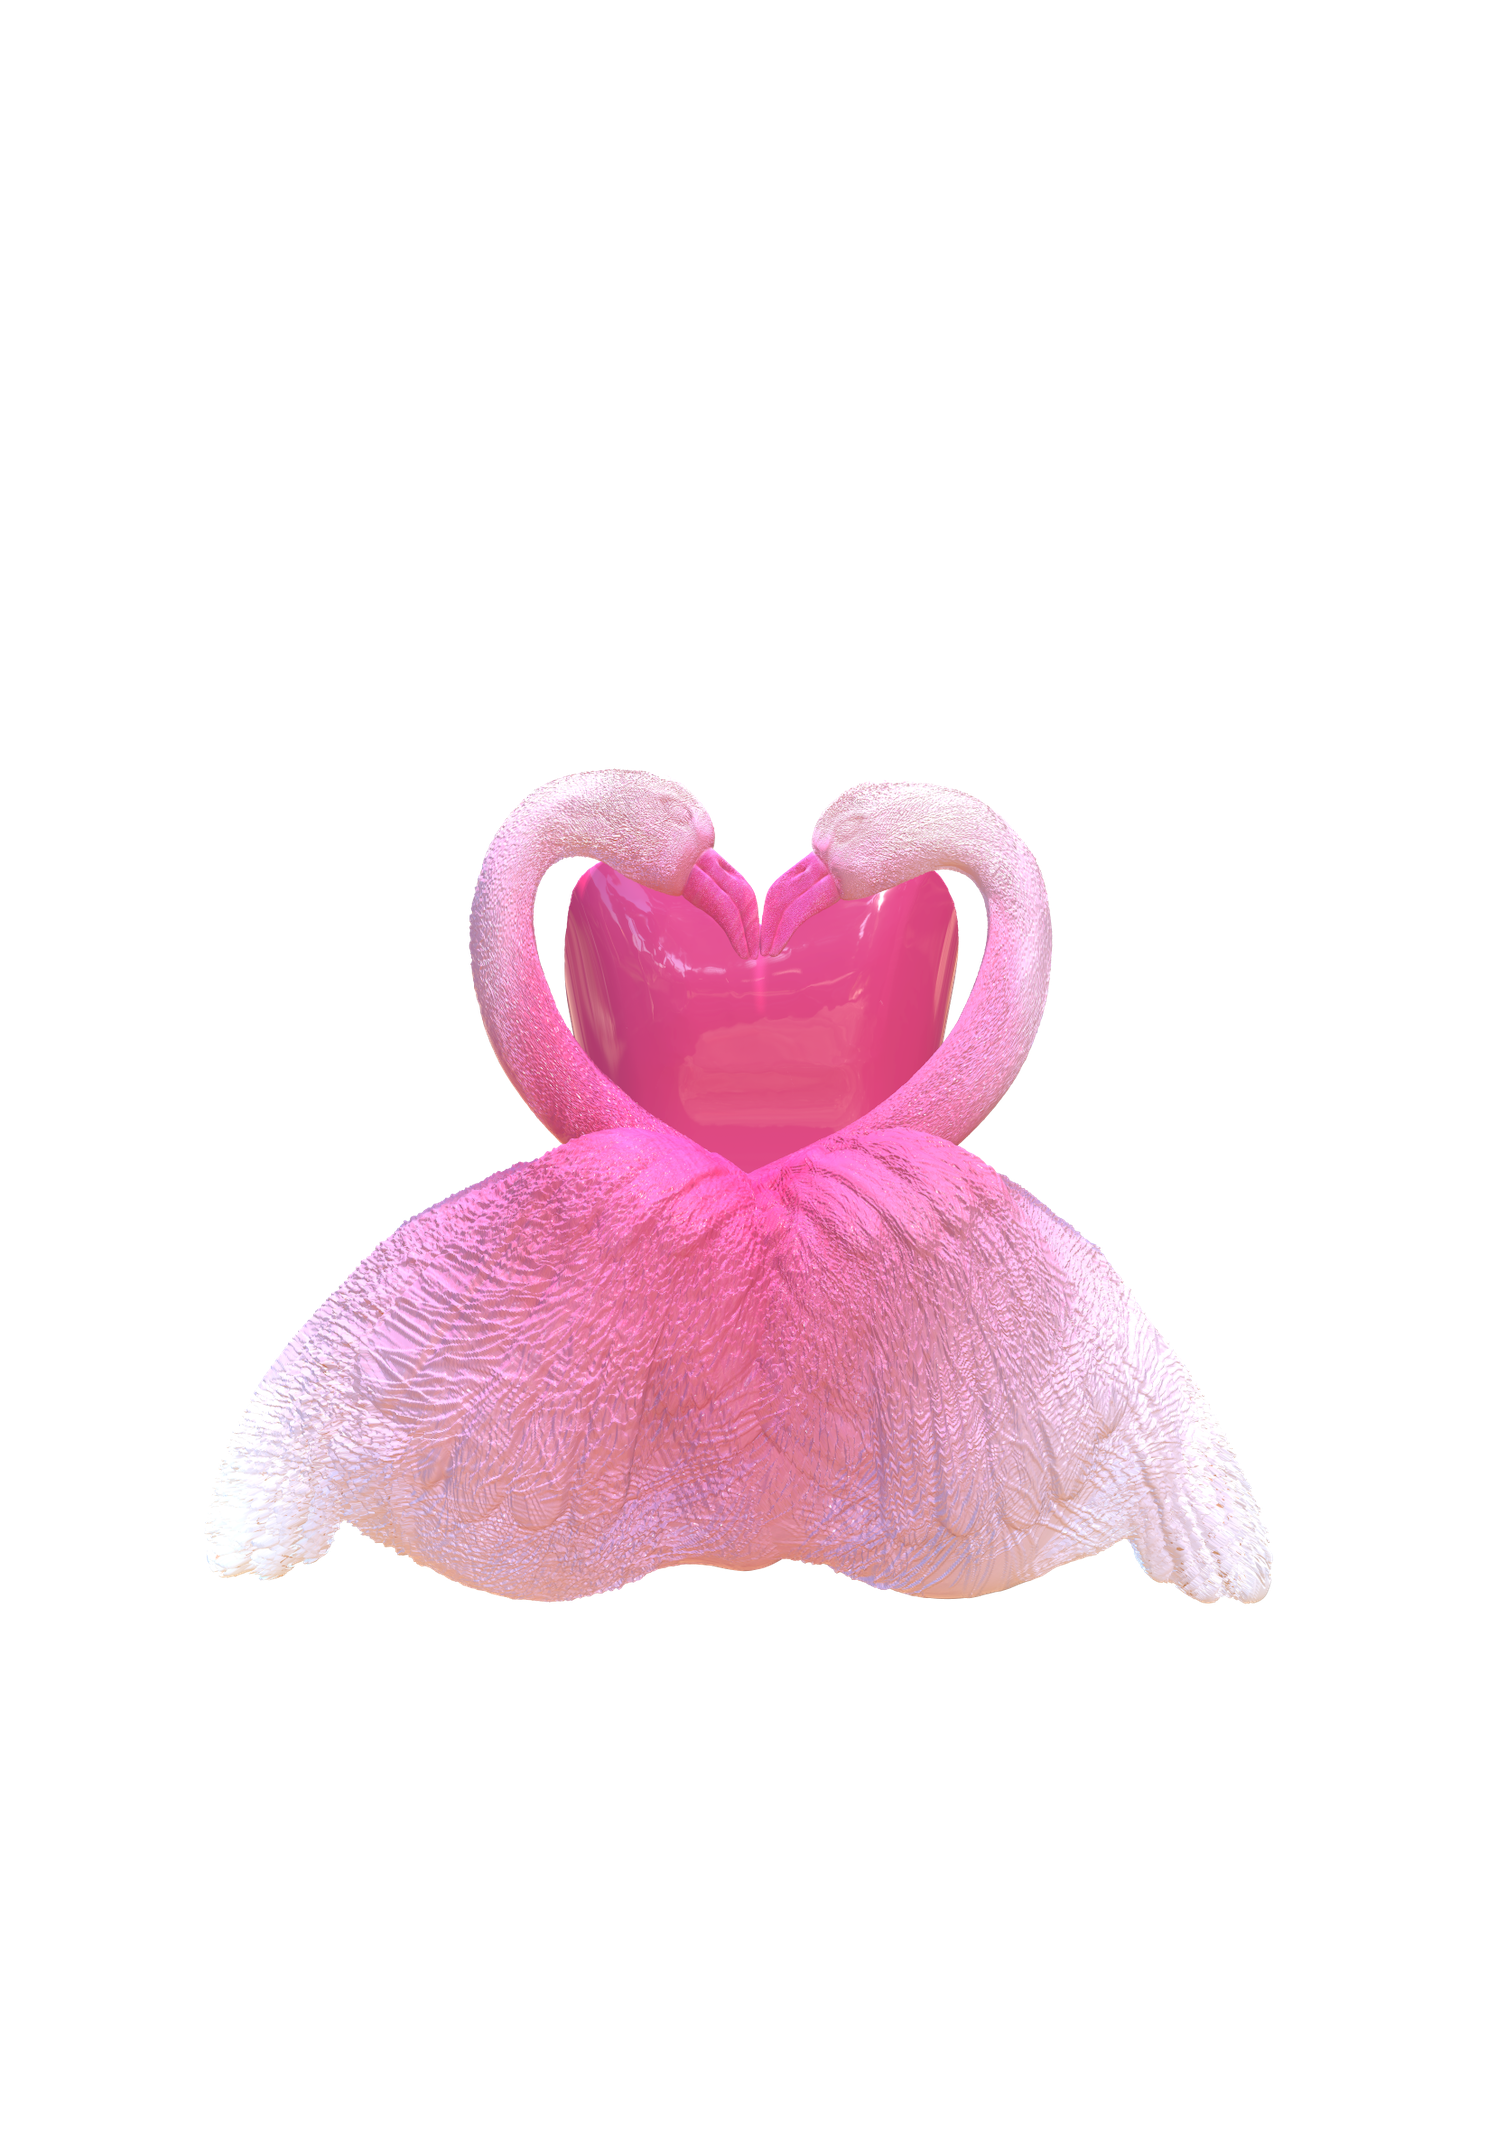 Flamingo of Love